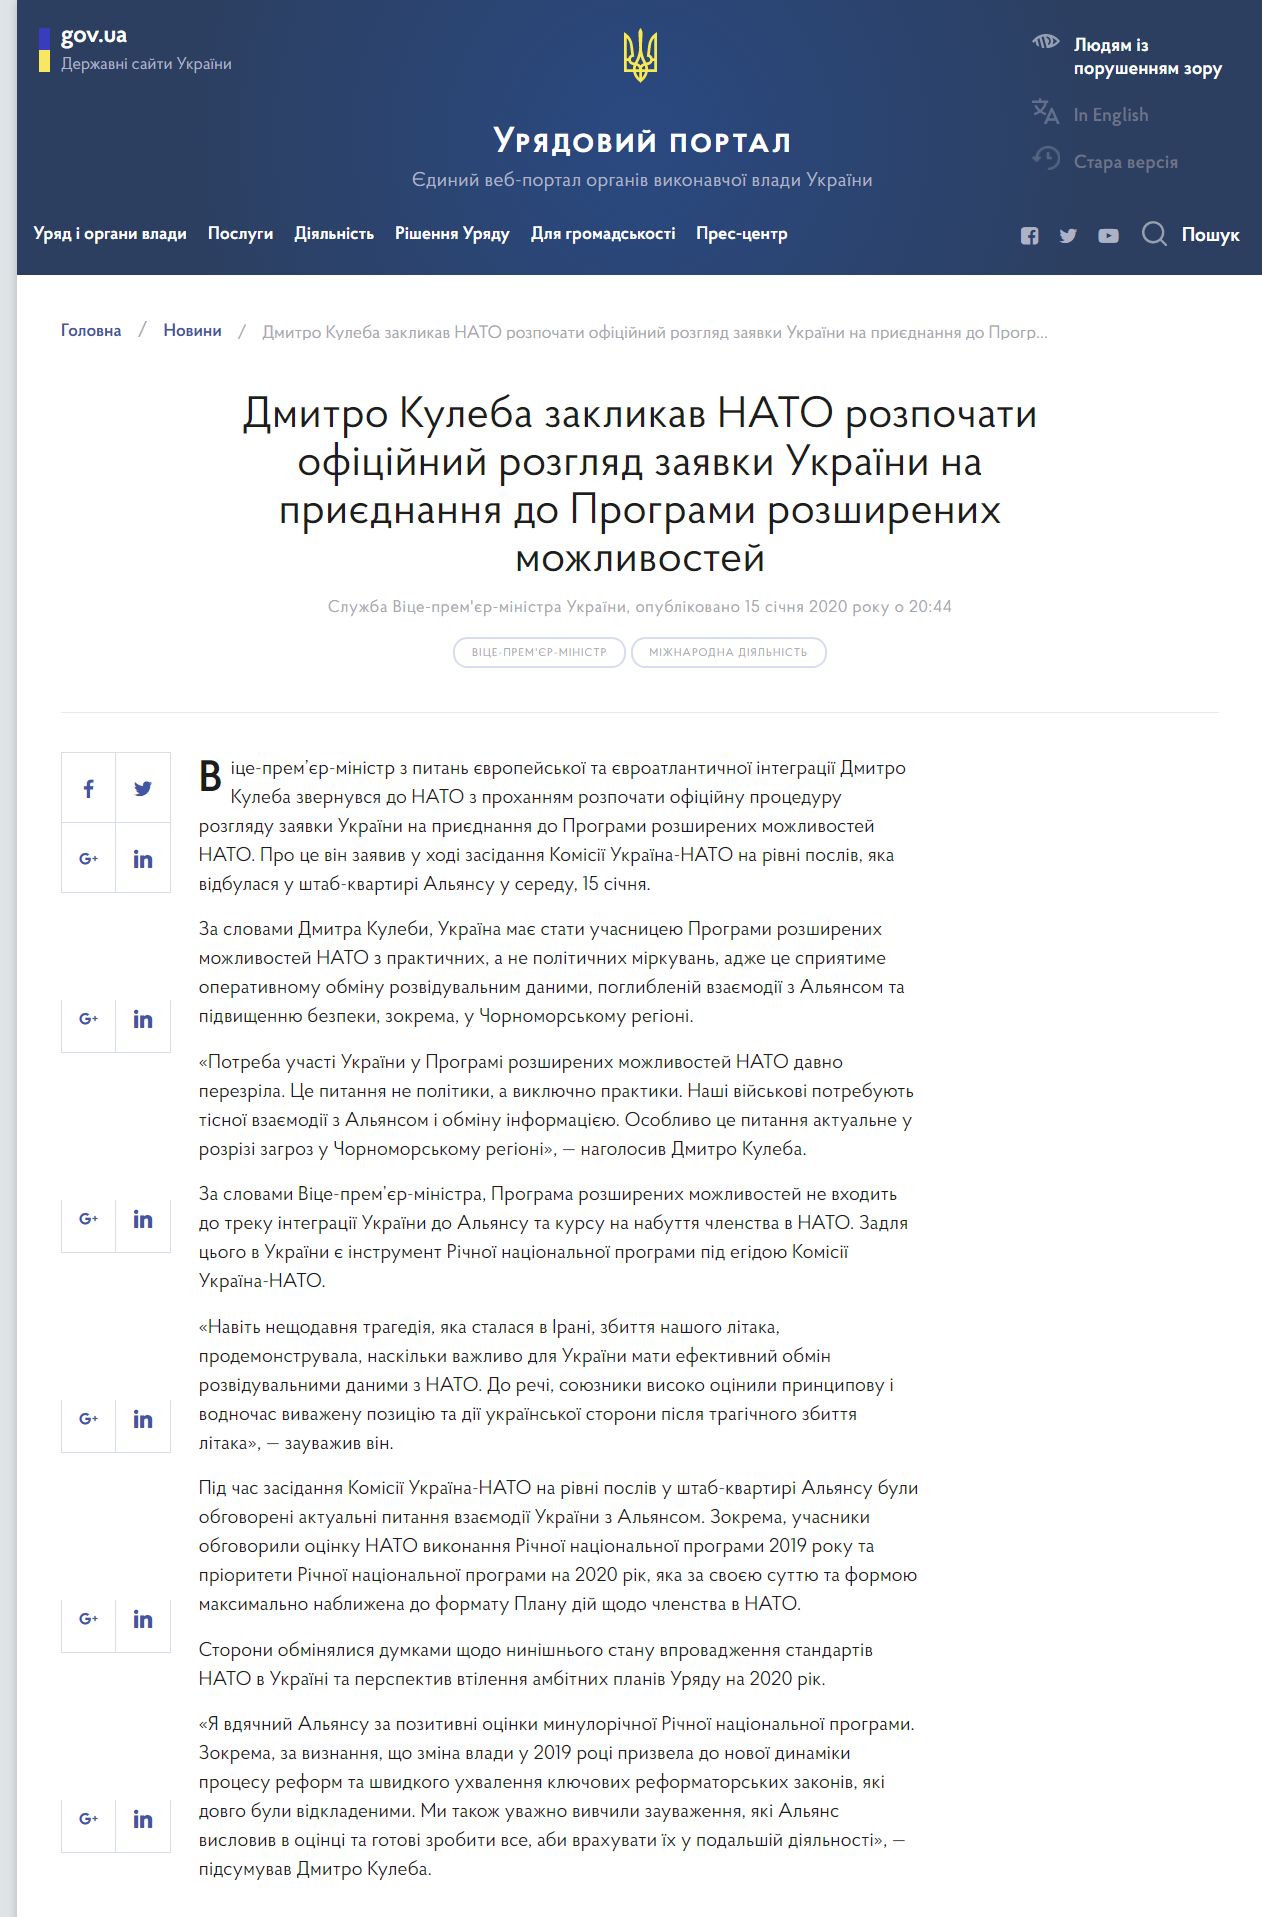 https://www.kmu.gov.ua/news/dmitro-kuleba-zaklikav-nato-rozpochati-oficijnij-rozglyad-zayavki-ukrayini-na-priyednannya-do-programi-rozshirenih-mozhlivostej